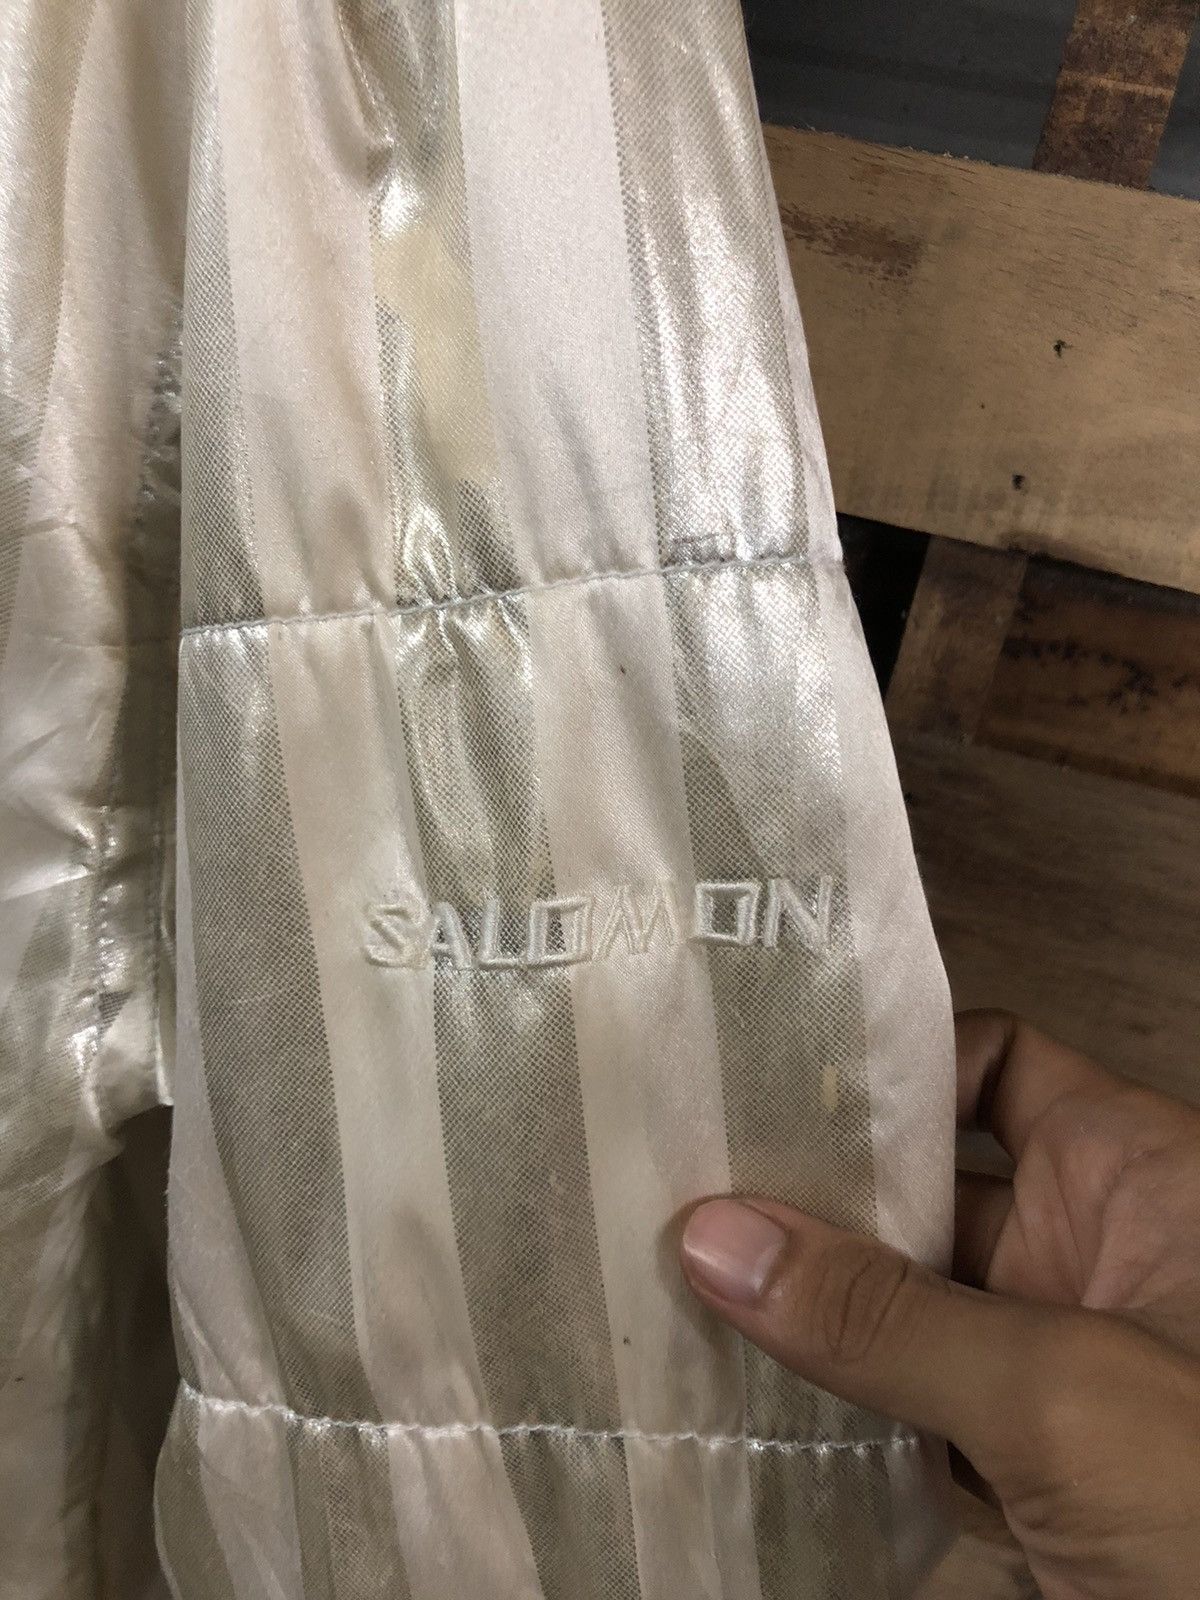 Salomon Lined Down Jacket Inside Full Print - 5